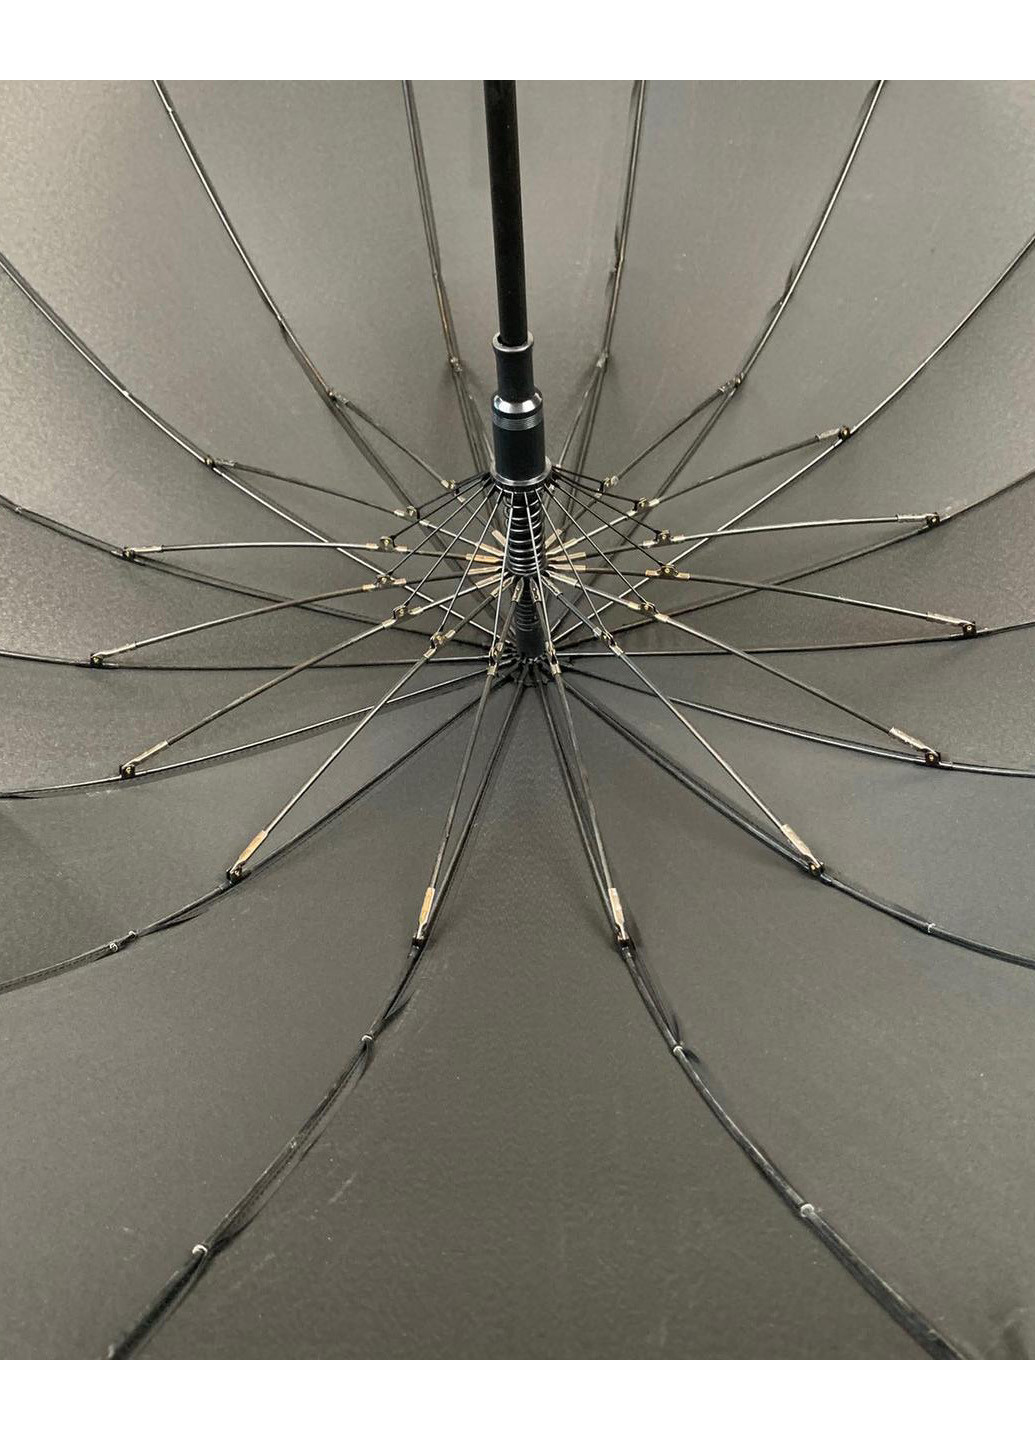 Мужской зонт полуавтомат (1003) 101 см Max (189978933)